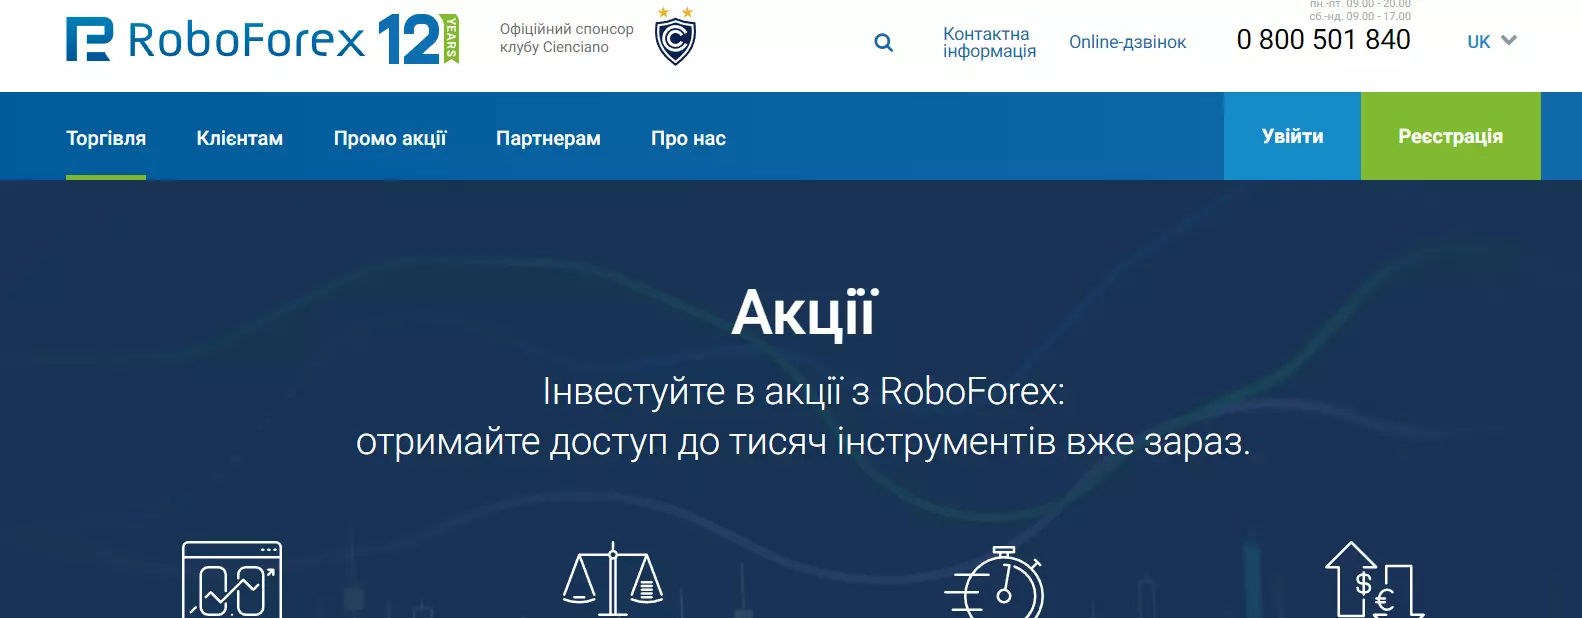 RoboForex реєстрація